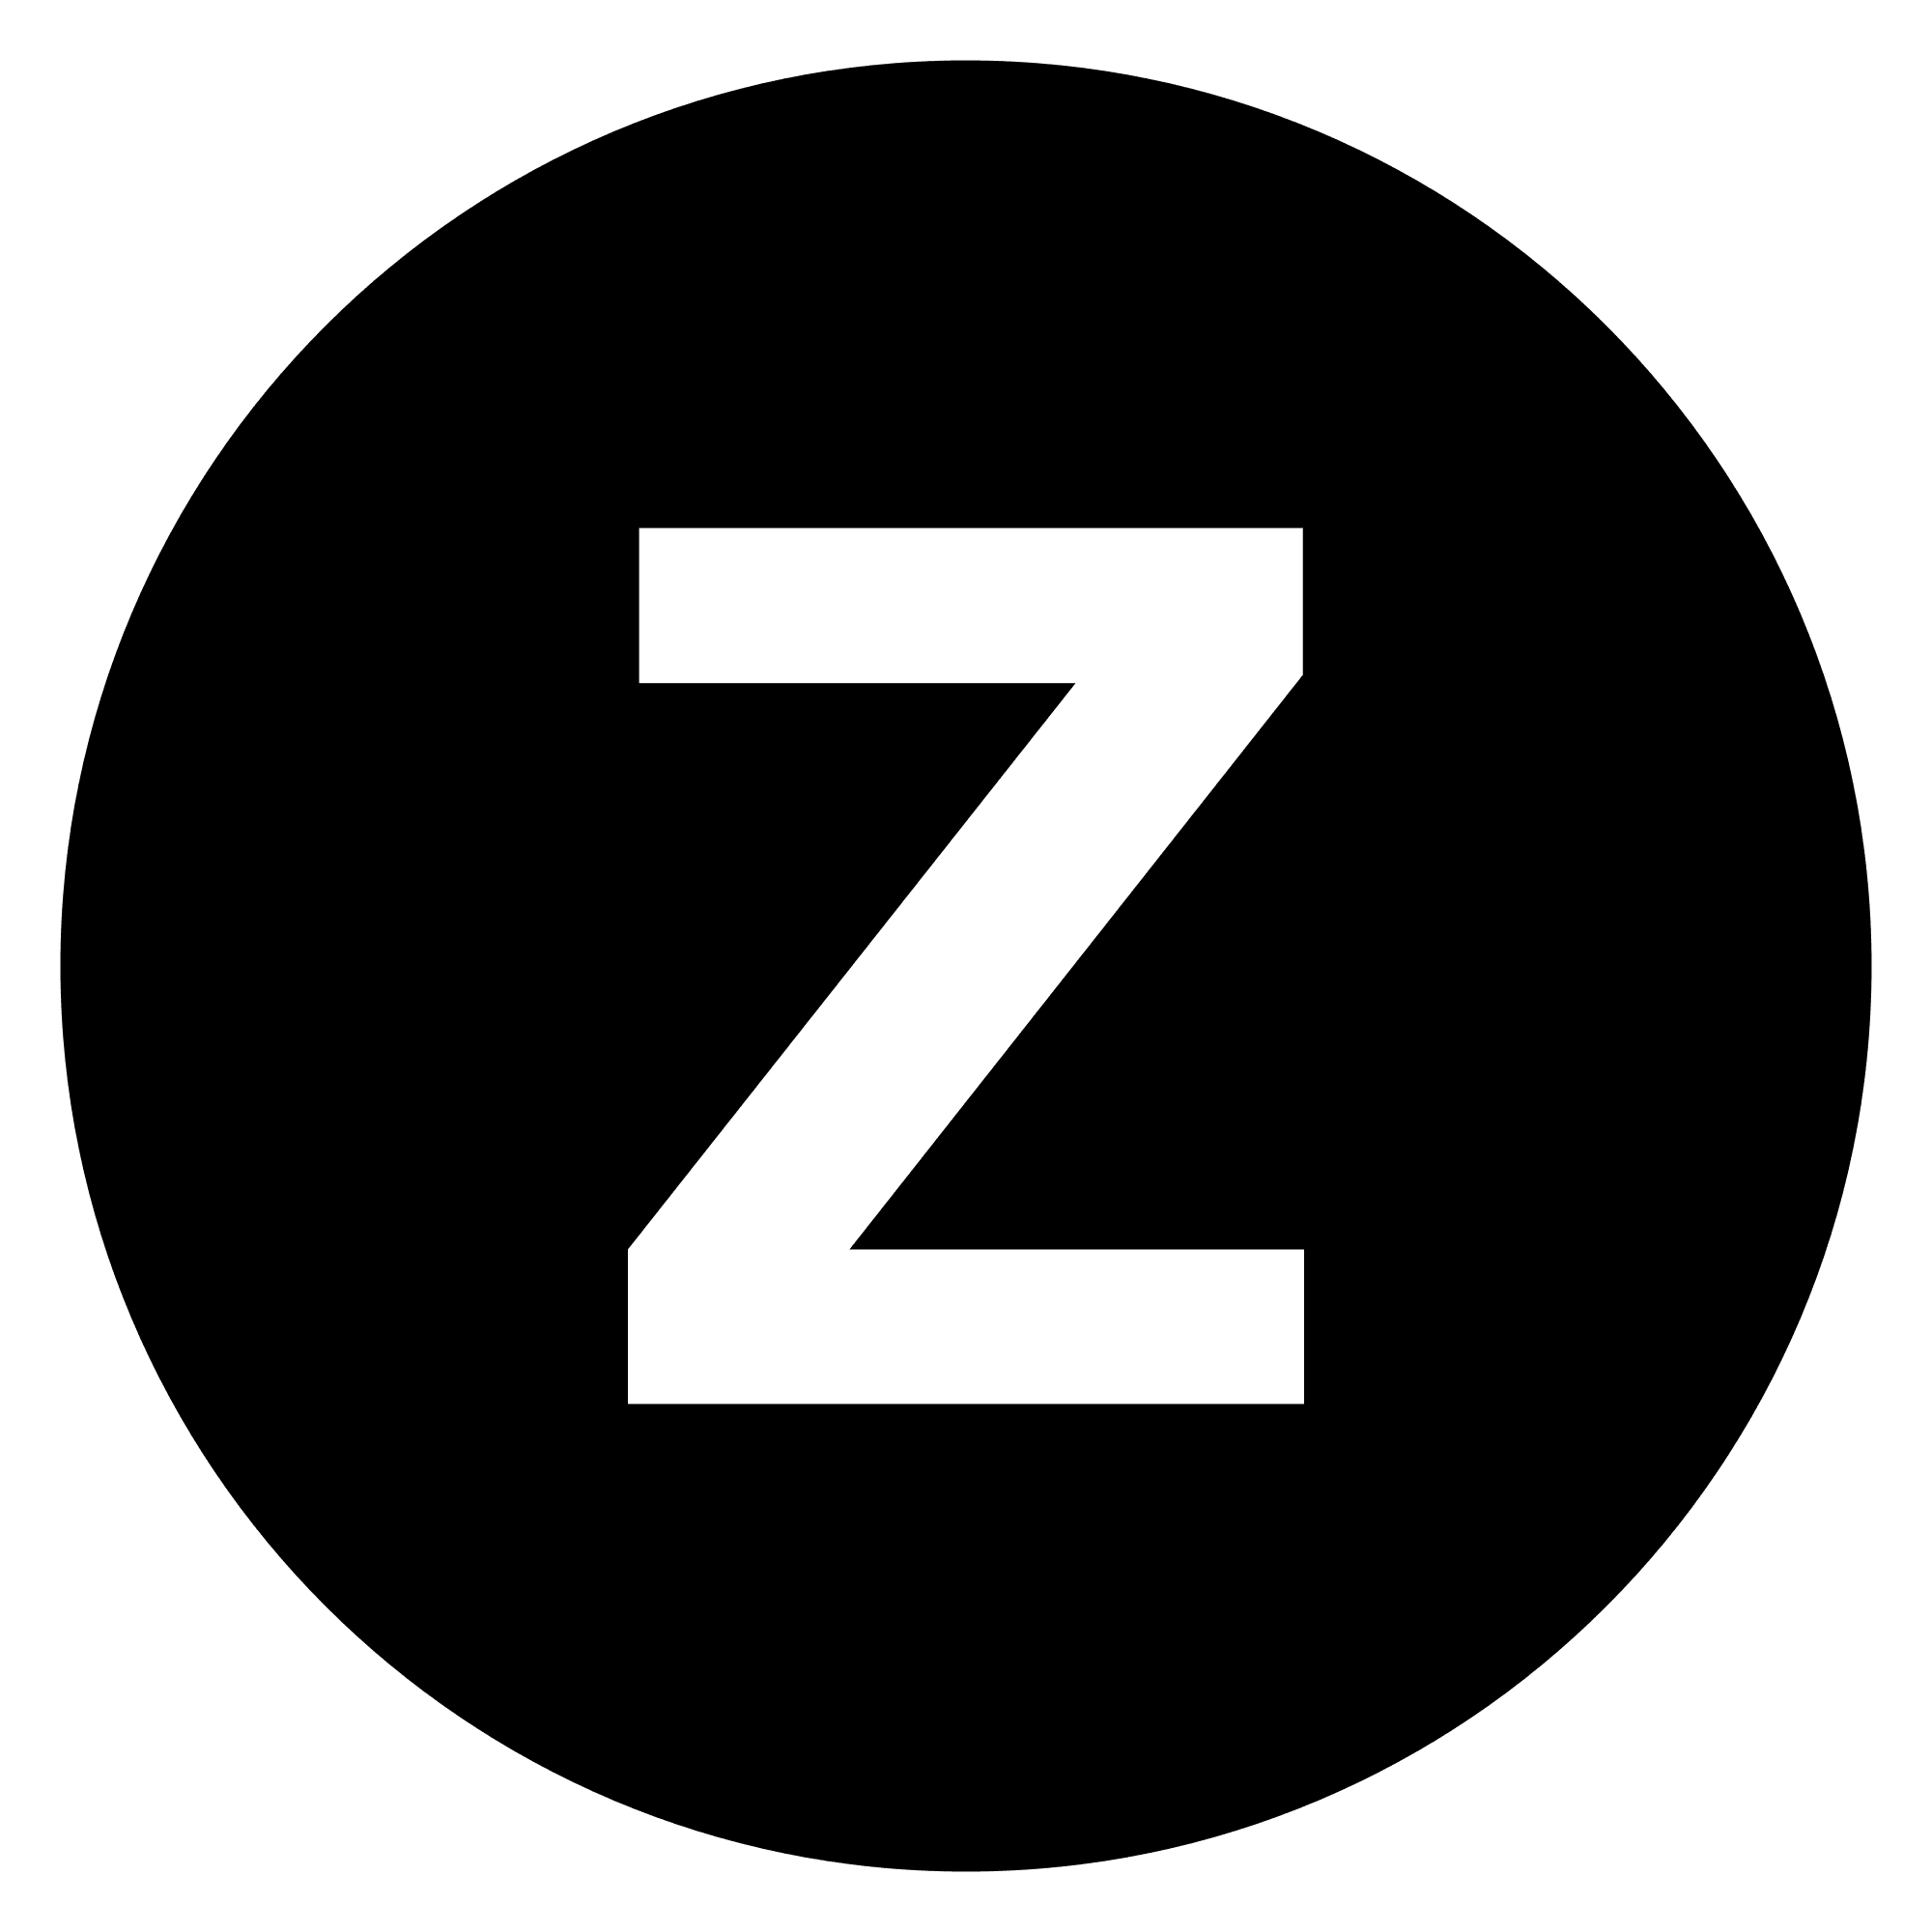 Review by Zain S. via RateABiz